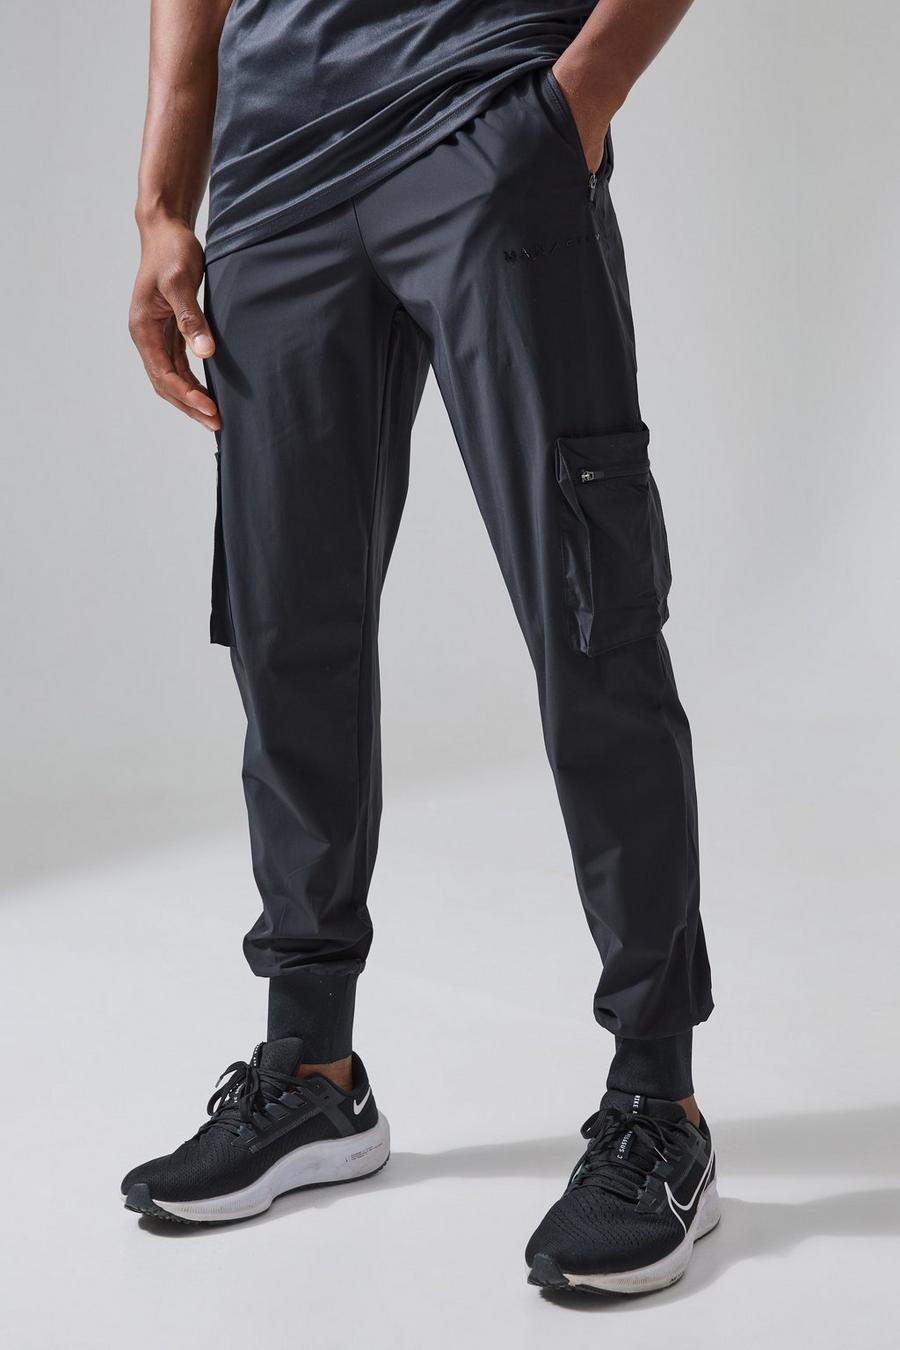 שחור negro מכנסי דגמ'ח לחדר הכושר עם אריגת ריב עמוקה וכיתוב Man Active